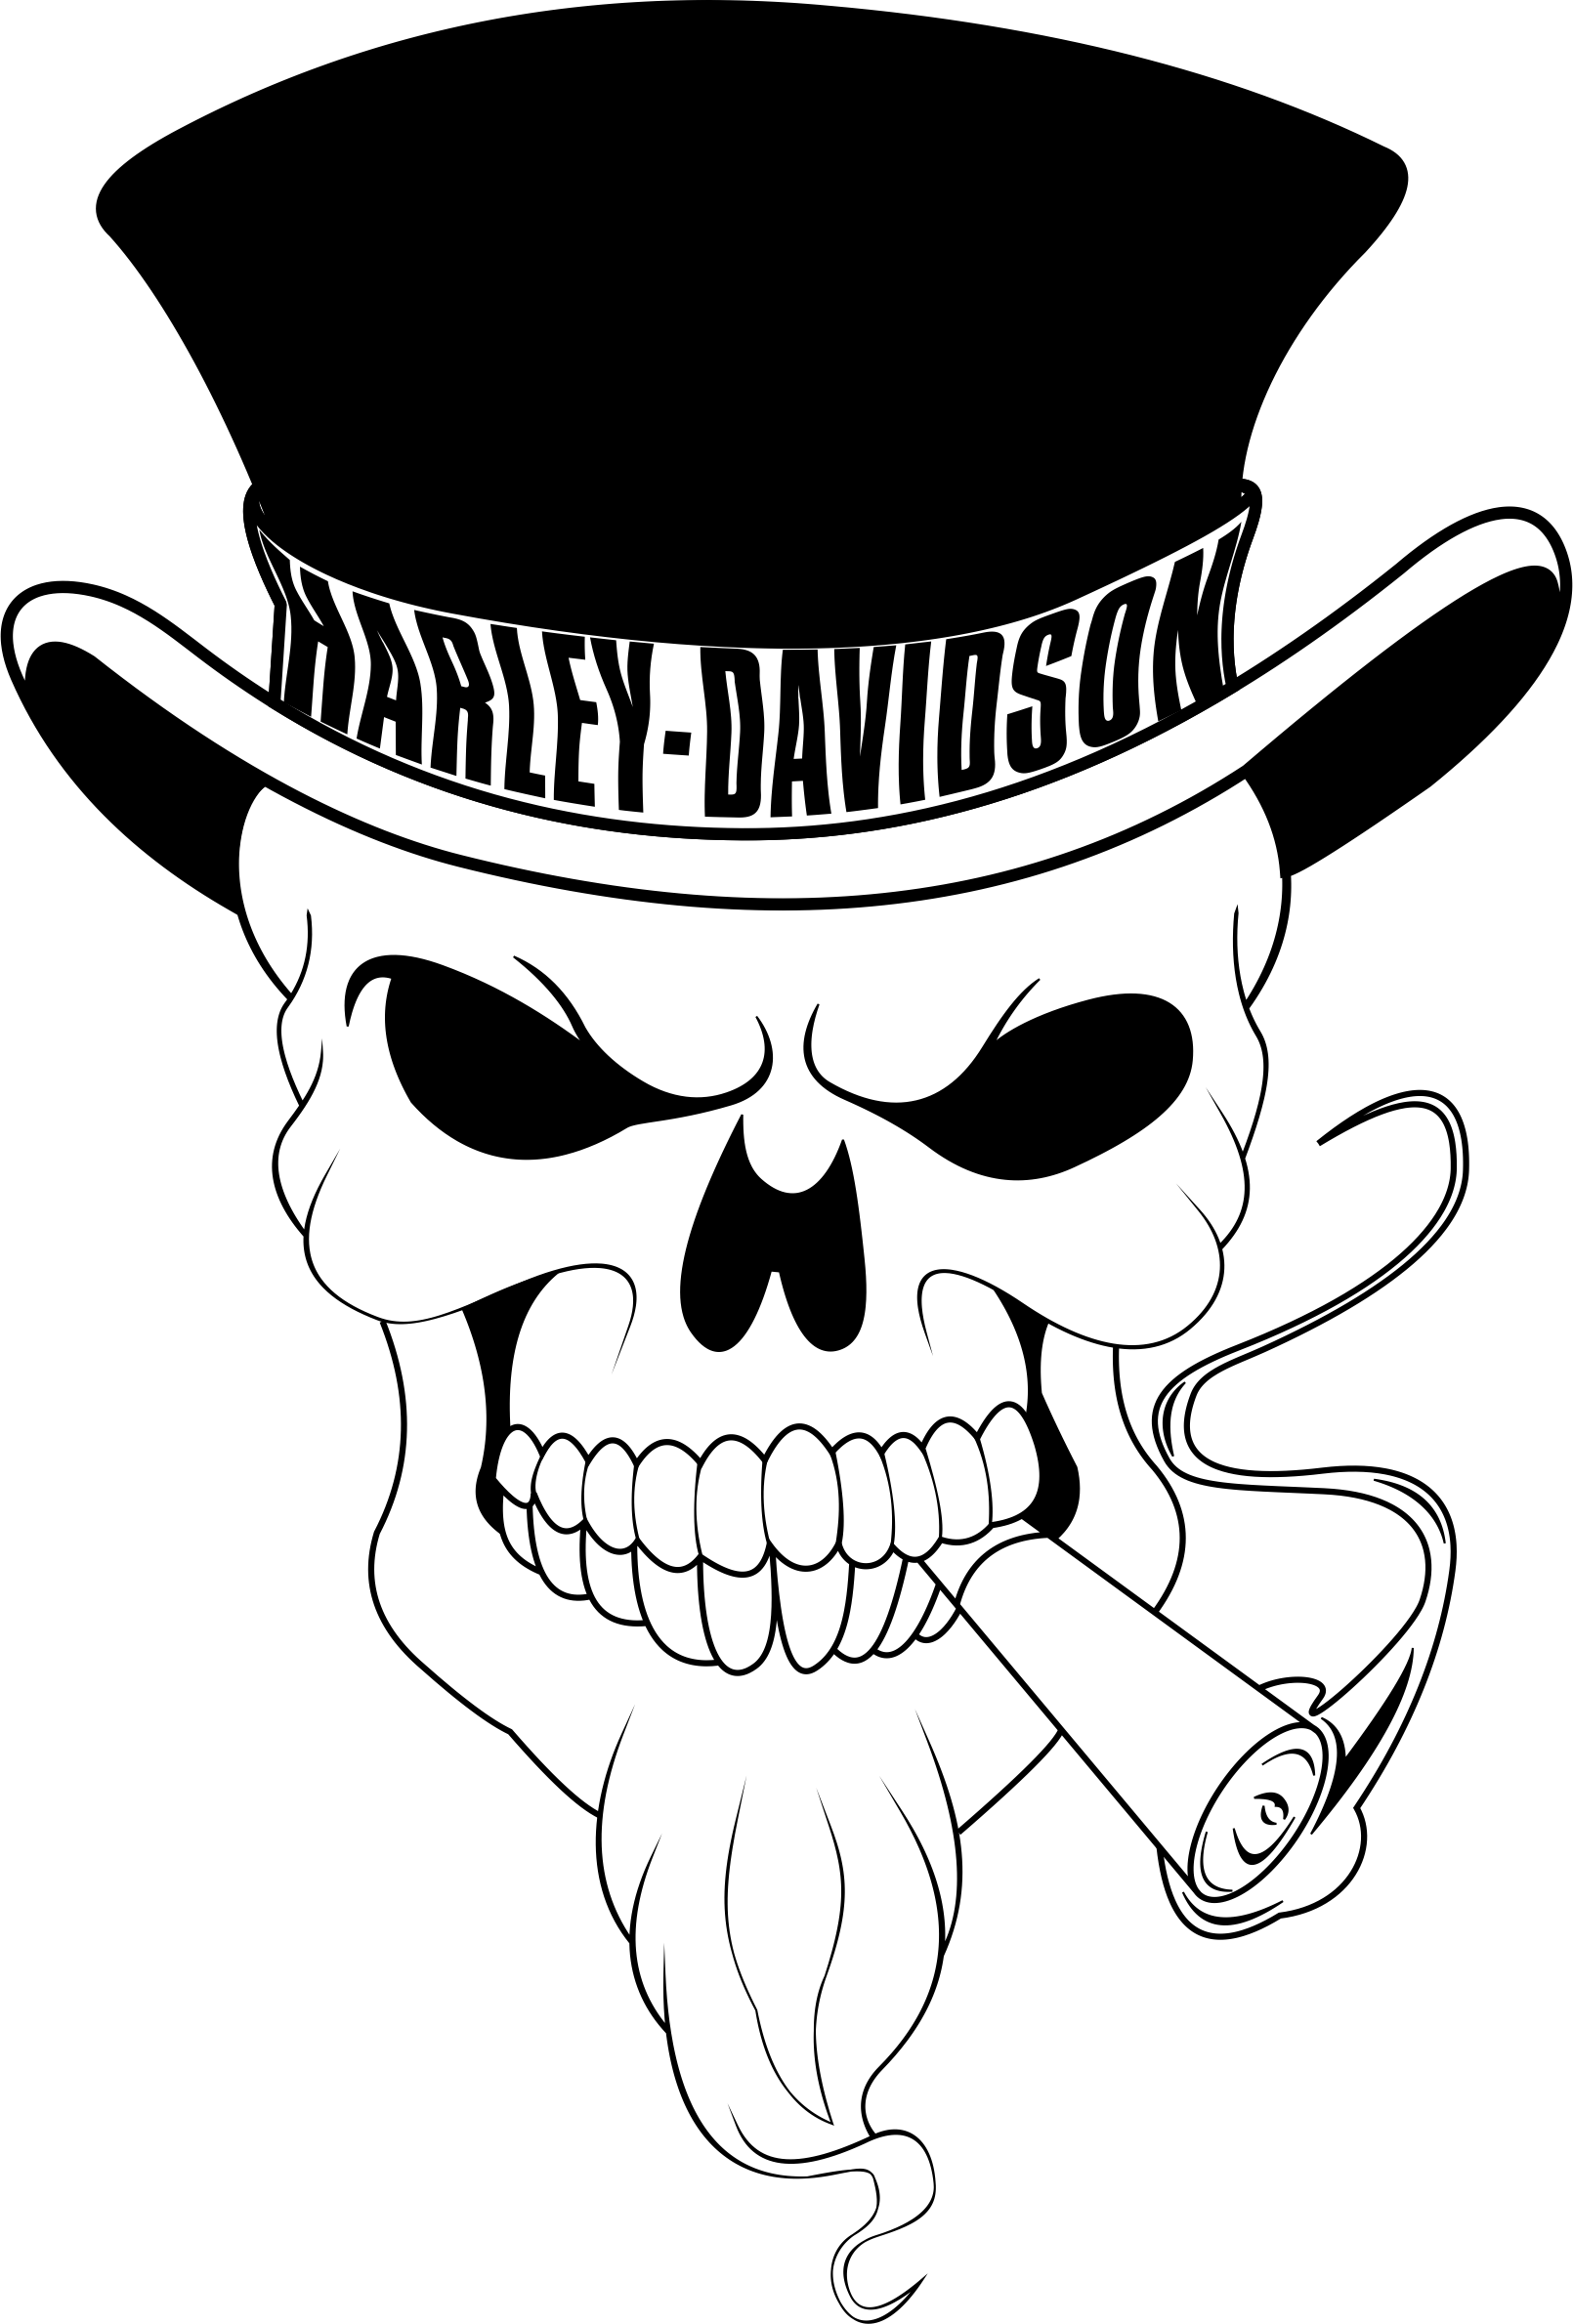 Ssckull Clipart Harley - Skull Harley Davidson Logo (1610x2379), Png Download